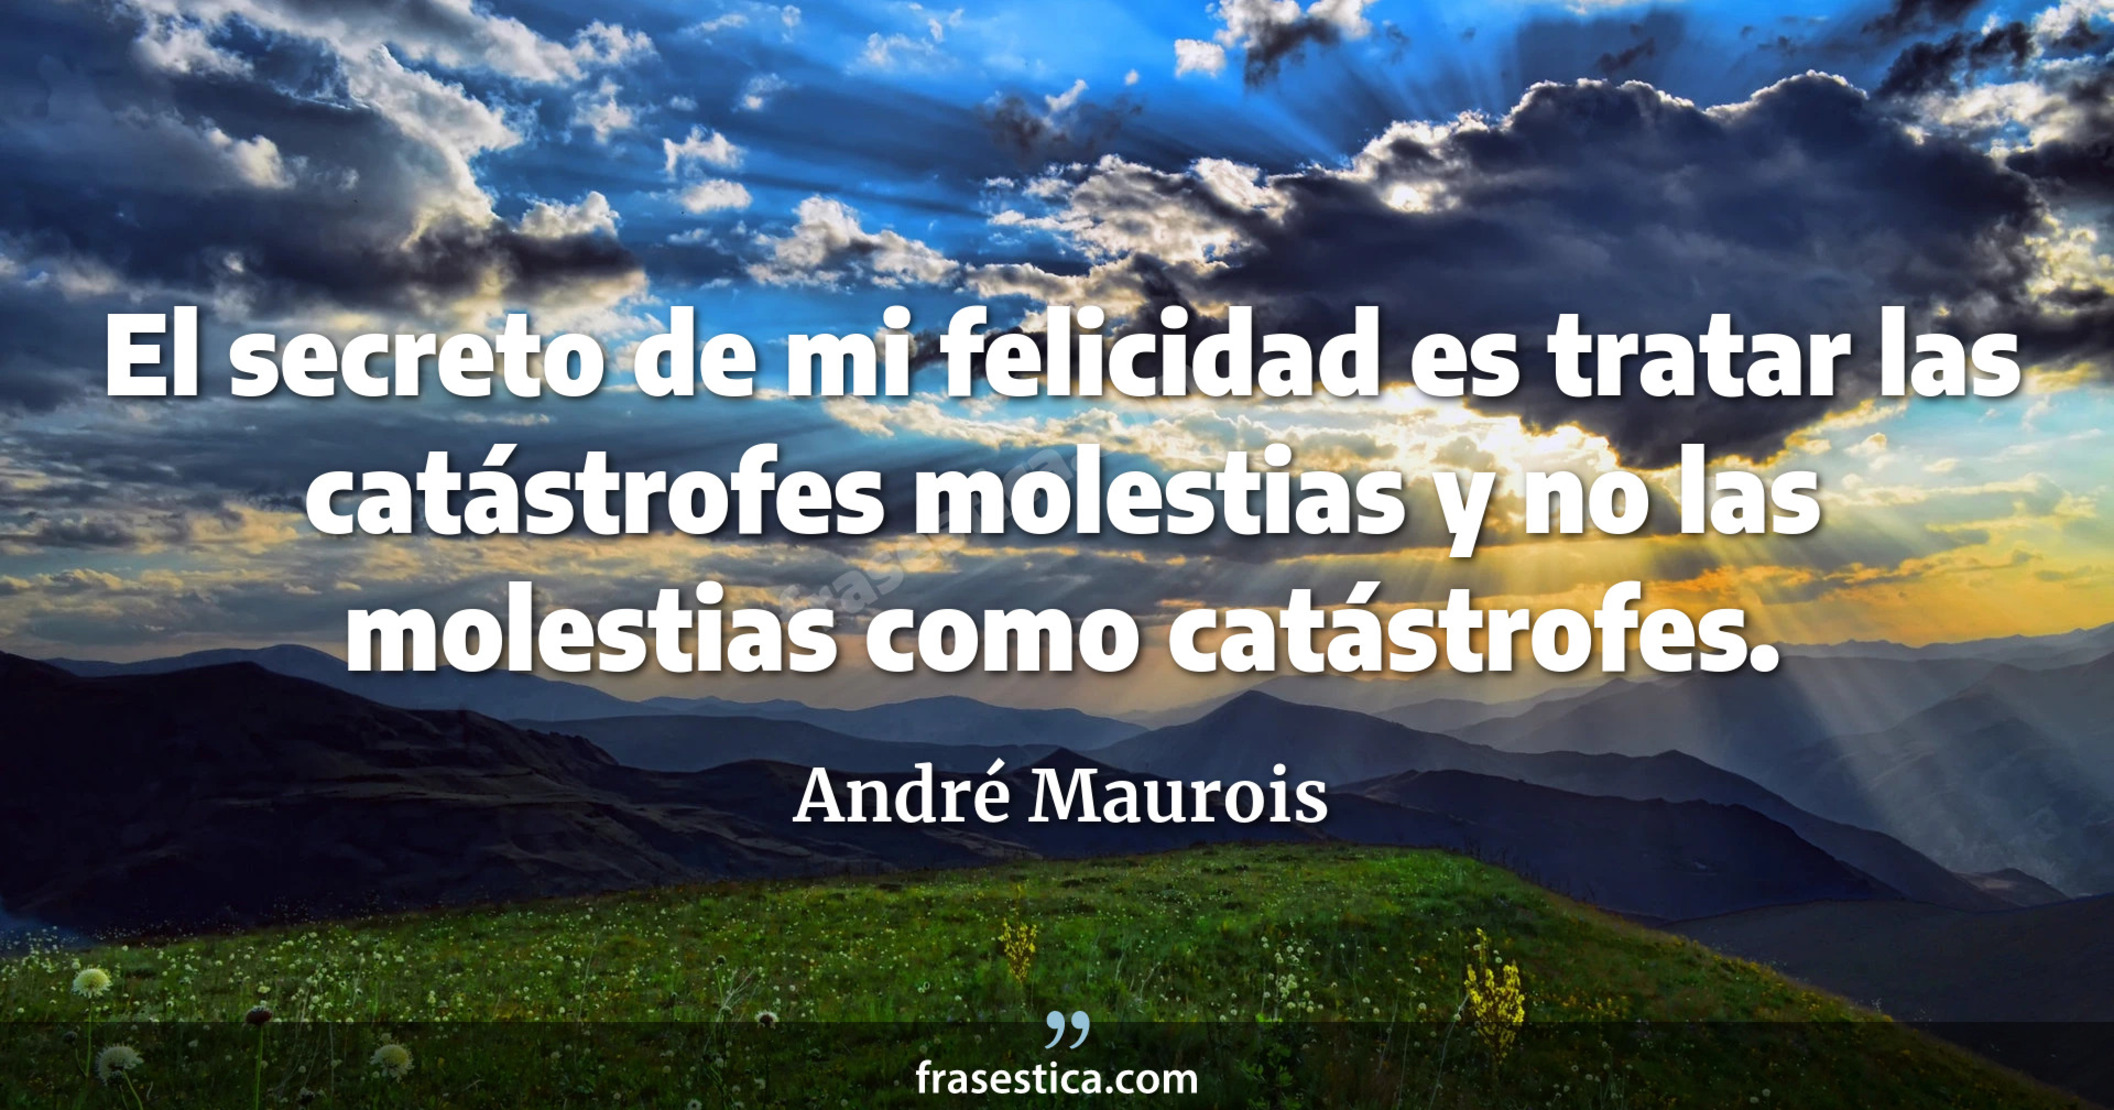 El secreto de mi felicidad es tratar las catástrofes molestias y no las molestias como catástrofes. - André Maurois